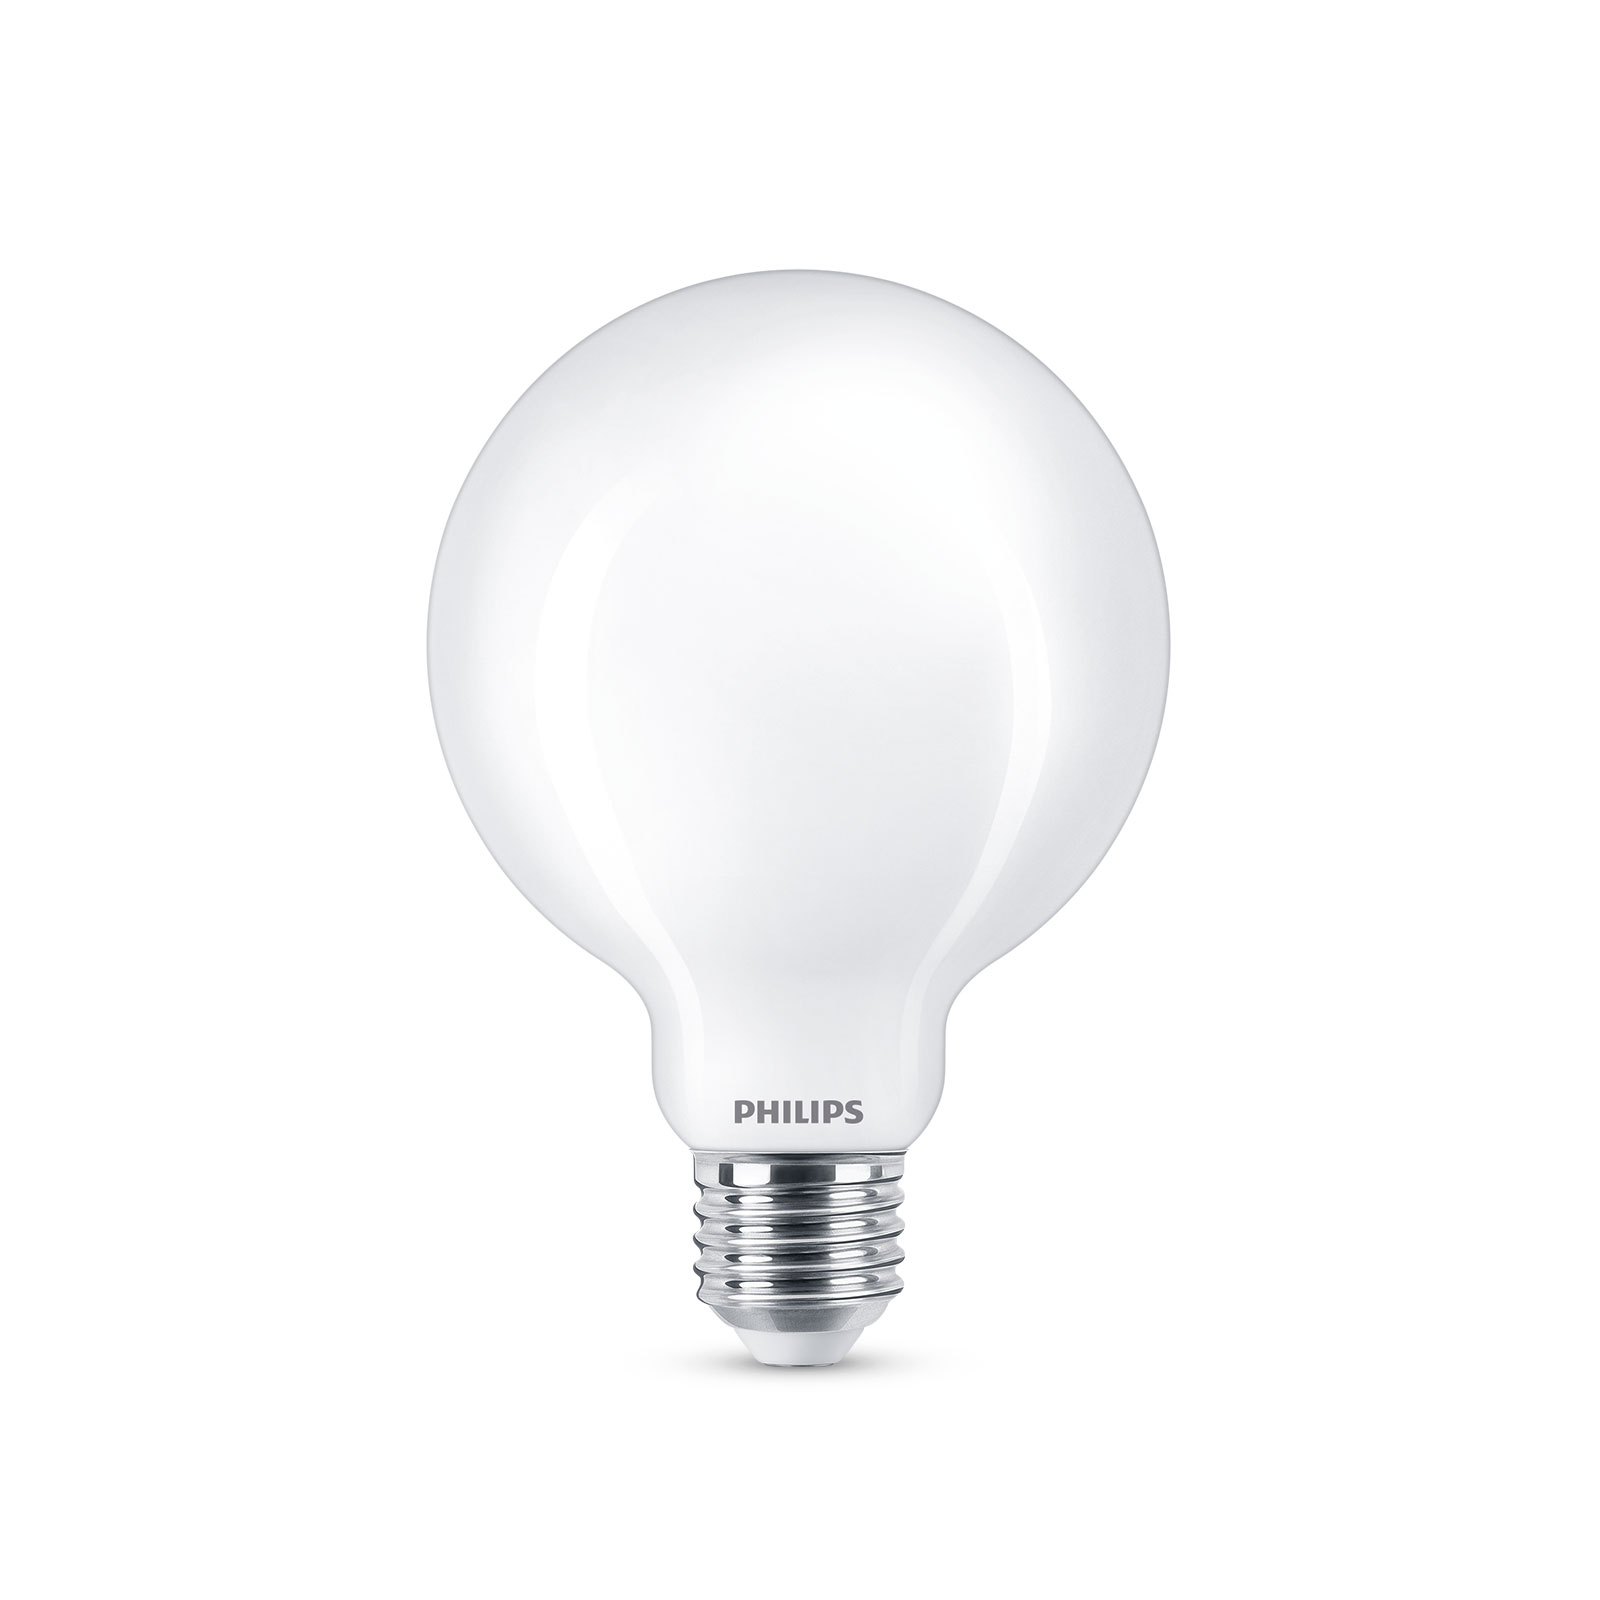 Philips globe LED bulb E27 G93 7 W 2,700 K opal